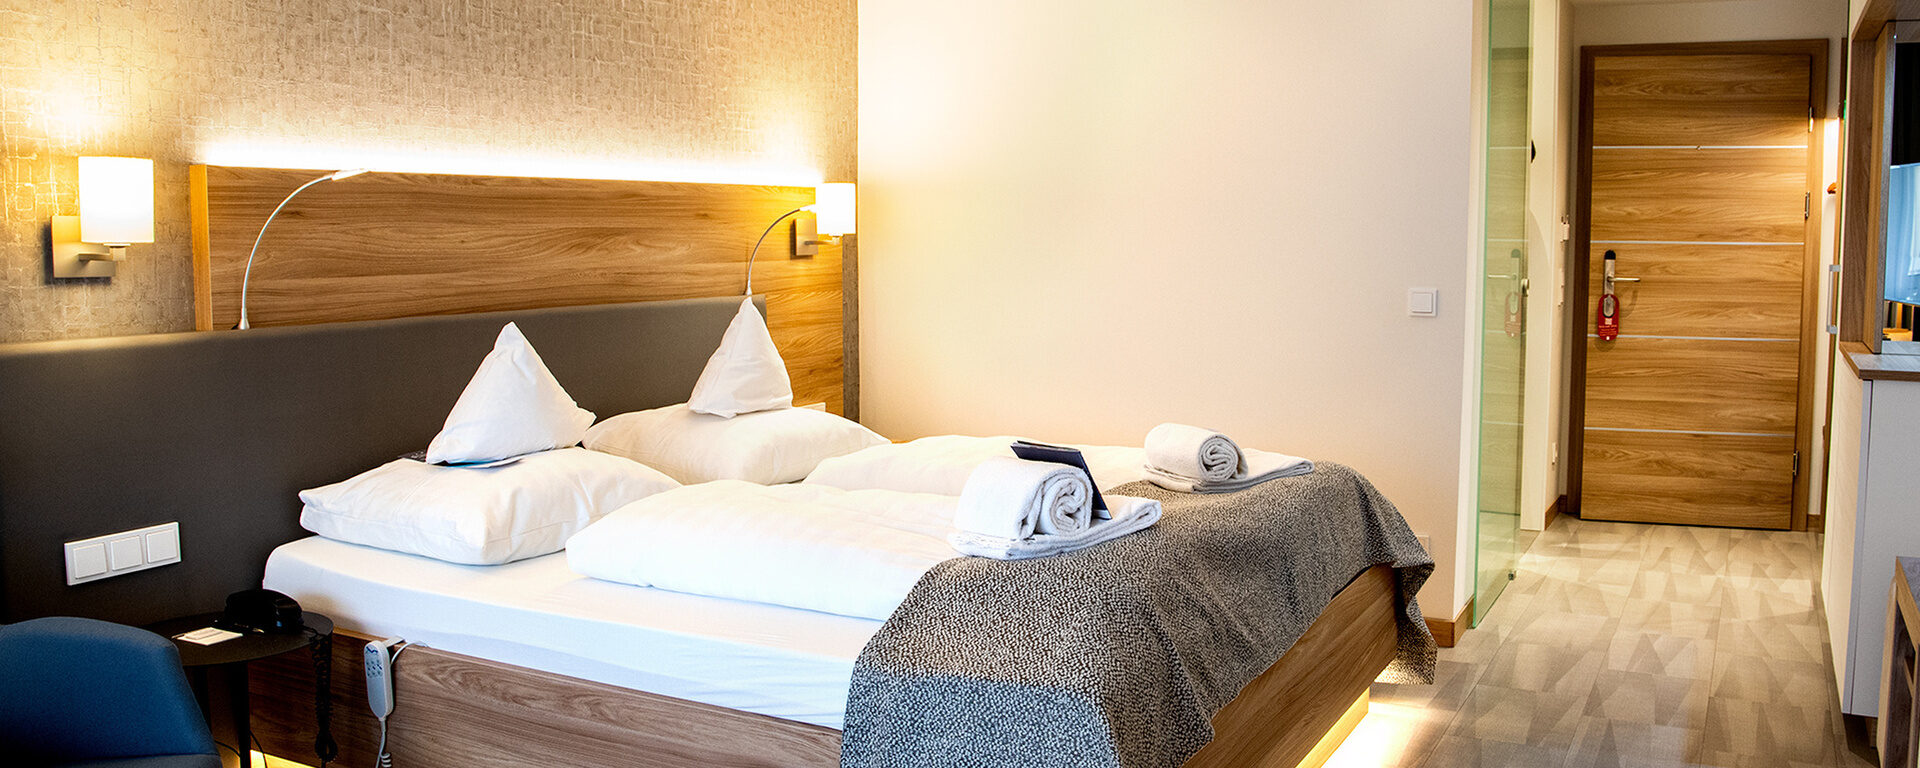 Im Hotel St. Wolfgang in Bad Griesbach heißen wir Sie willkommen mit sauberen, modern ausgestatteten Zimmern